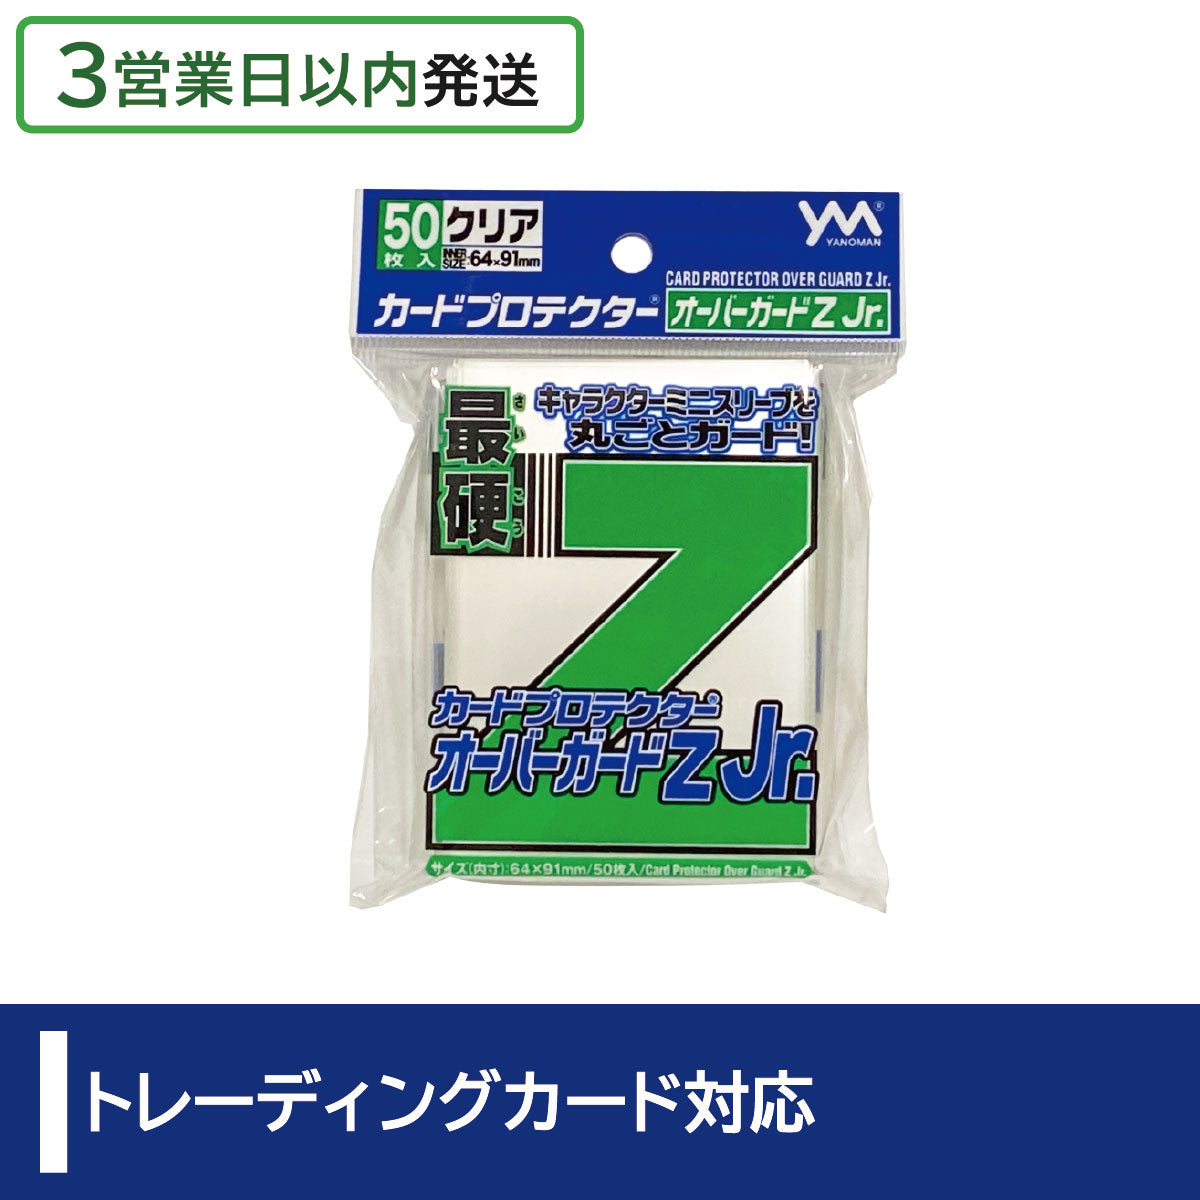 【3営業日内発送】カードプロテクター オーバーガードZ Jr.